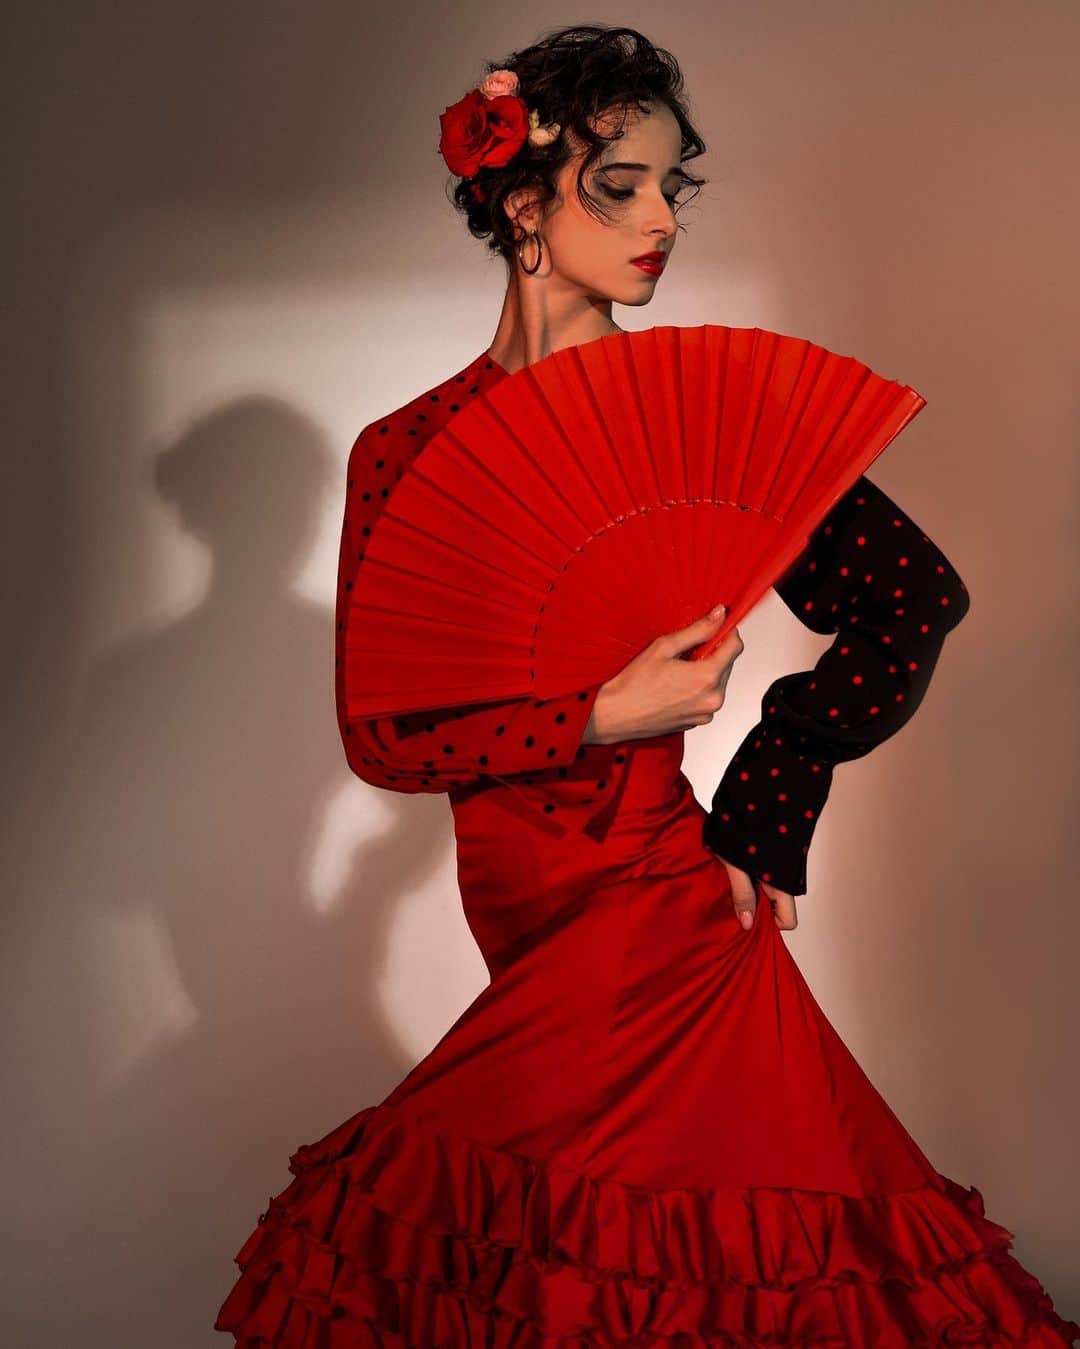 マリア・コーレワのインスタグラム：「Getting ready to set the Spanish mood on stage in the 19th of September in “Don Quixote” ❤️‍🔥💃🏻 And remembering this wonderful photoshoot we had with dear @shamala_portraiting @shamala____ that inspired me so so much 🥹 Real flamenco dress by @aireflamencotheatre and makeup and hair by @yanamaiami 🥰  Включаем испанское настроение к «Дон Кихоту» 19го сентября! ❤️‍🔥💃🏻 Вспоминаю волшебную съемку с дорогой @shamala_portraiting @shamala____ , которая меня так вдохновила 🥹 Настоящее платье для фламенко любезно предоставили @aireflamencotheatre , а за макияж и привеска отвечала @yanamaiami 🥰」